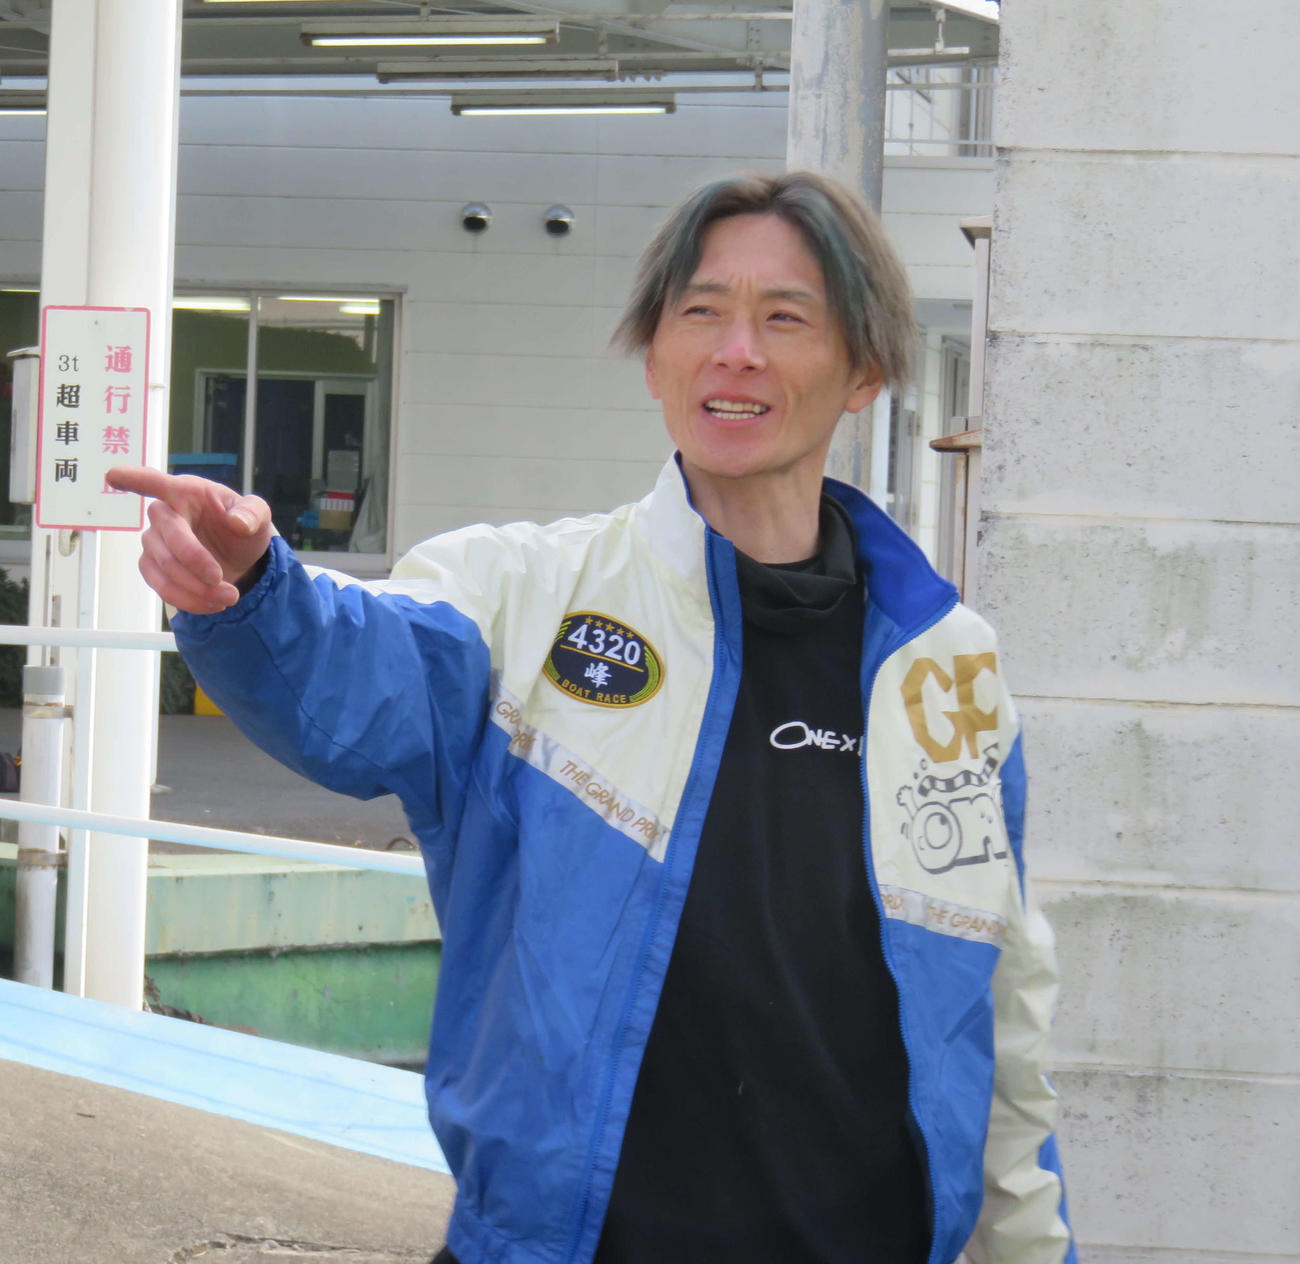 峰竜太は21年SGチャレンジカップ以来、約1年2カ月ぶりの多摩川参戦。この指先は、もちろん優勝を示す